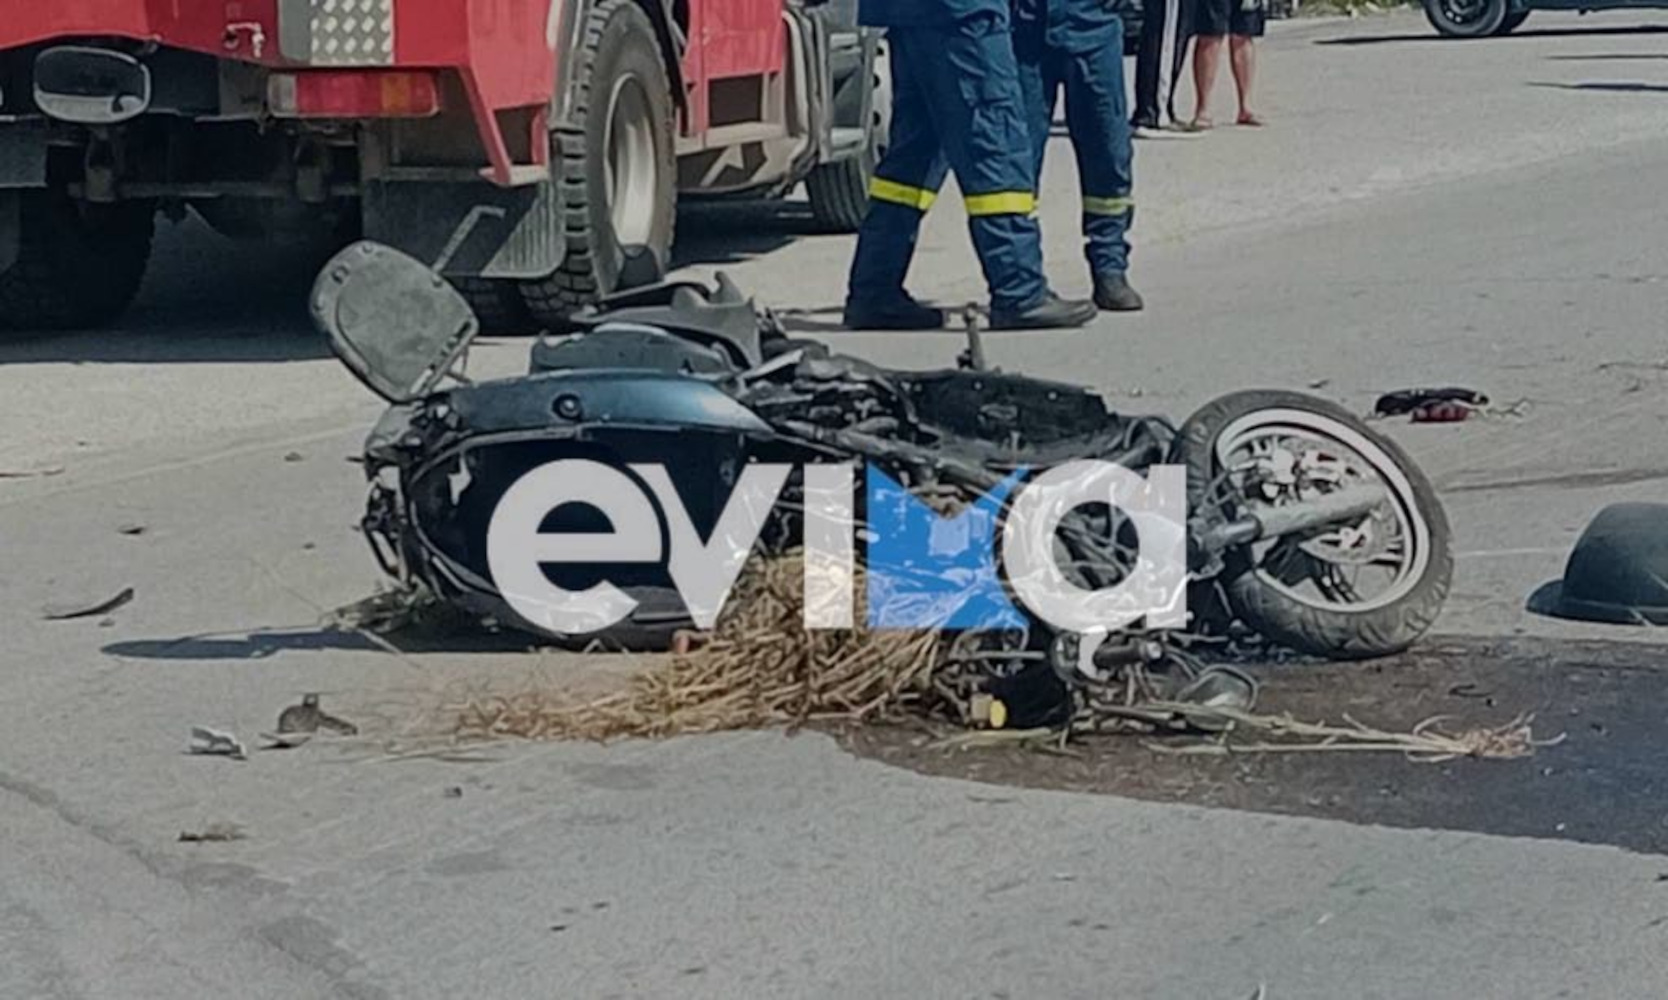 Χαλκίδα: Νεκρός ο οδηγός της μηχανής που συγκρούστηκε με αυτοκίνητο κοντά στην ΔΟΥ